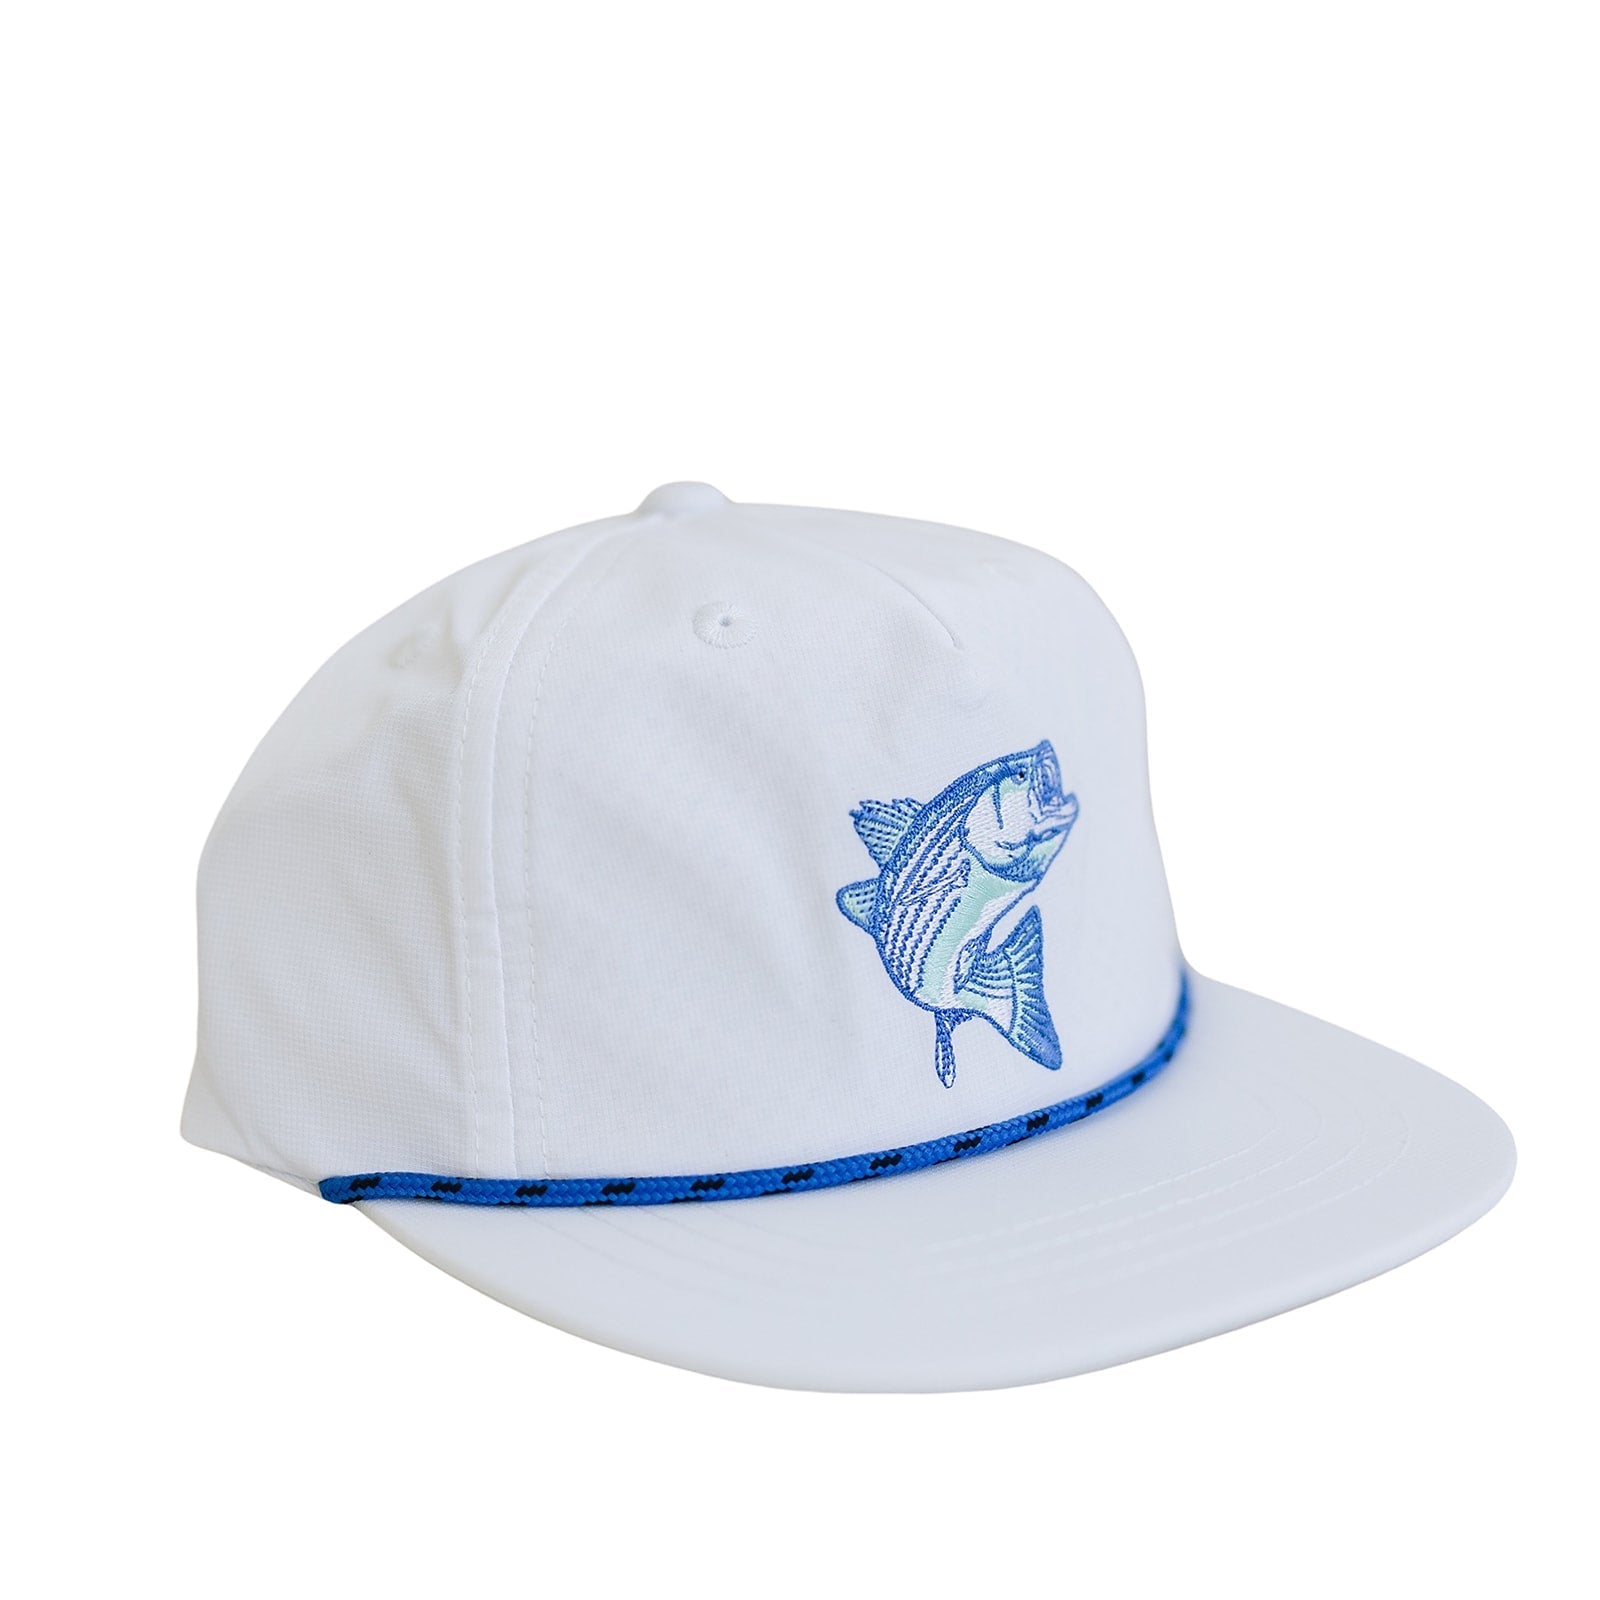 Bass Pro White Flat Brim Hat